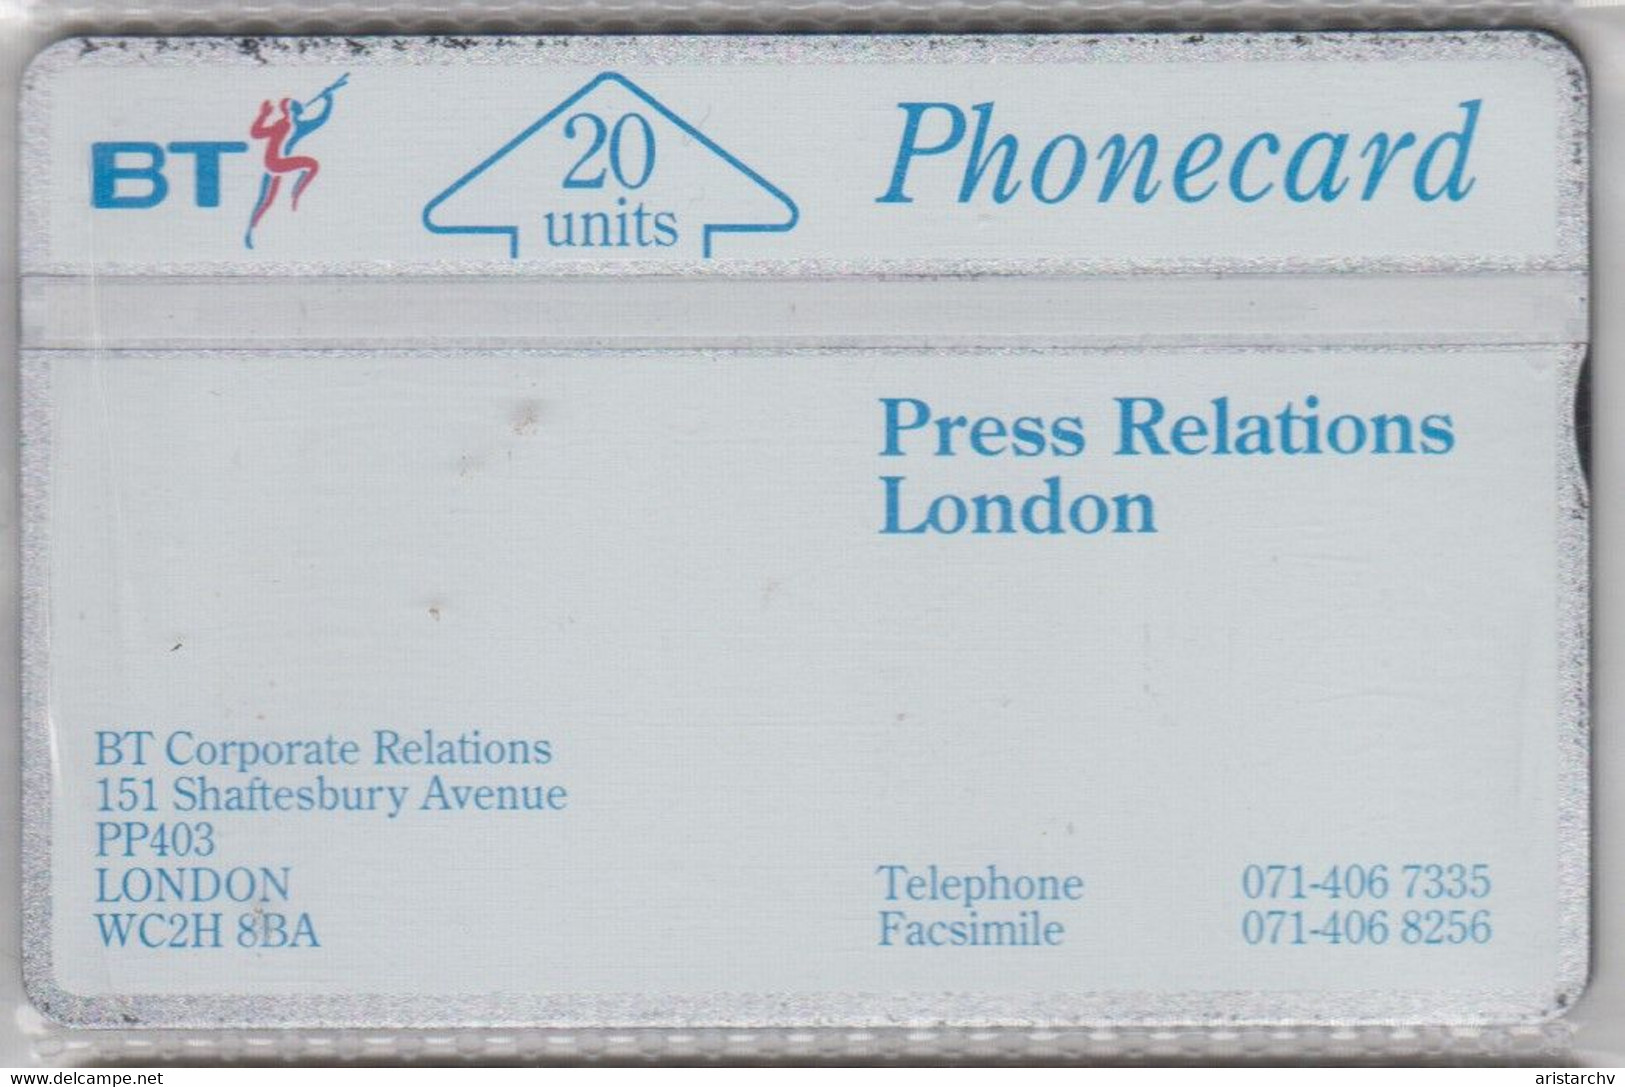 UNITED KINGDOM BT 1991 PRESS RELATIONS LONDON MINT - BT Emissioni Interne